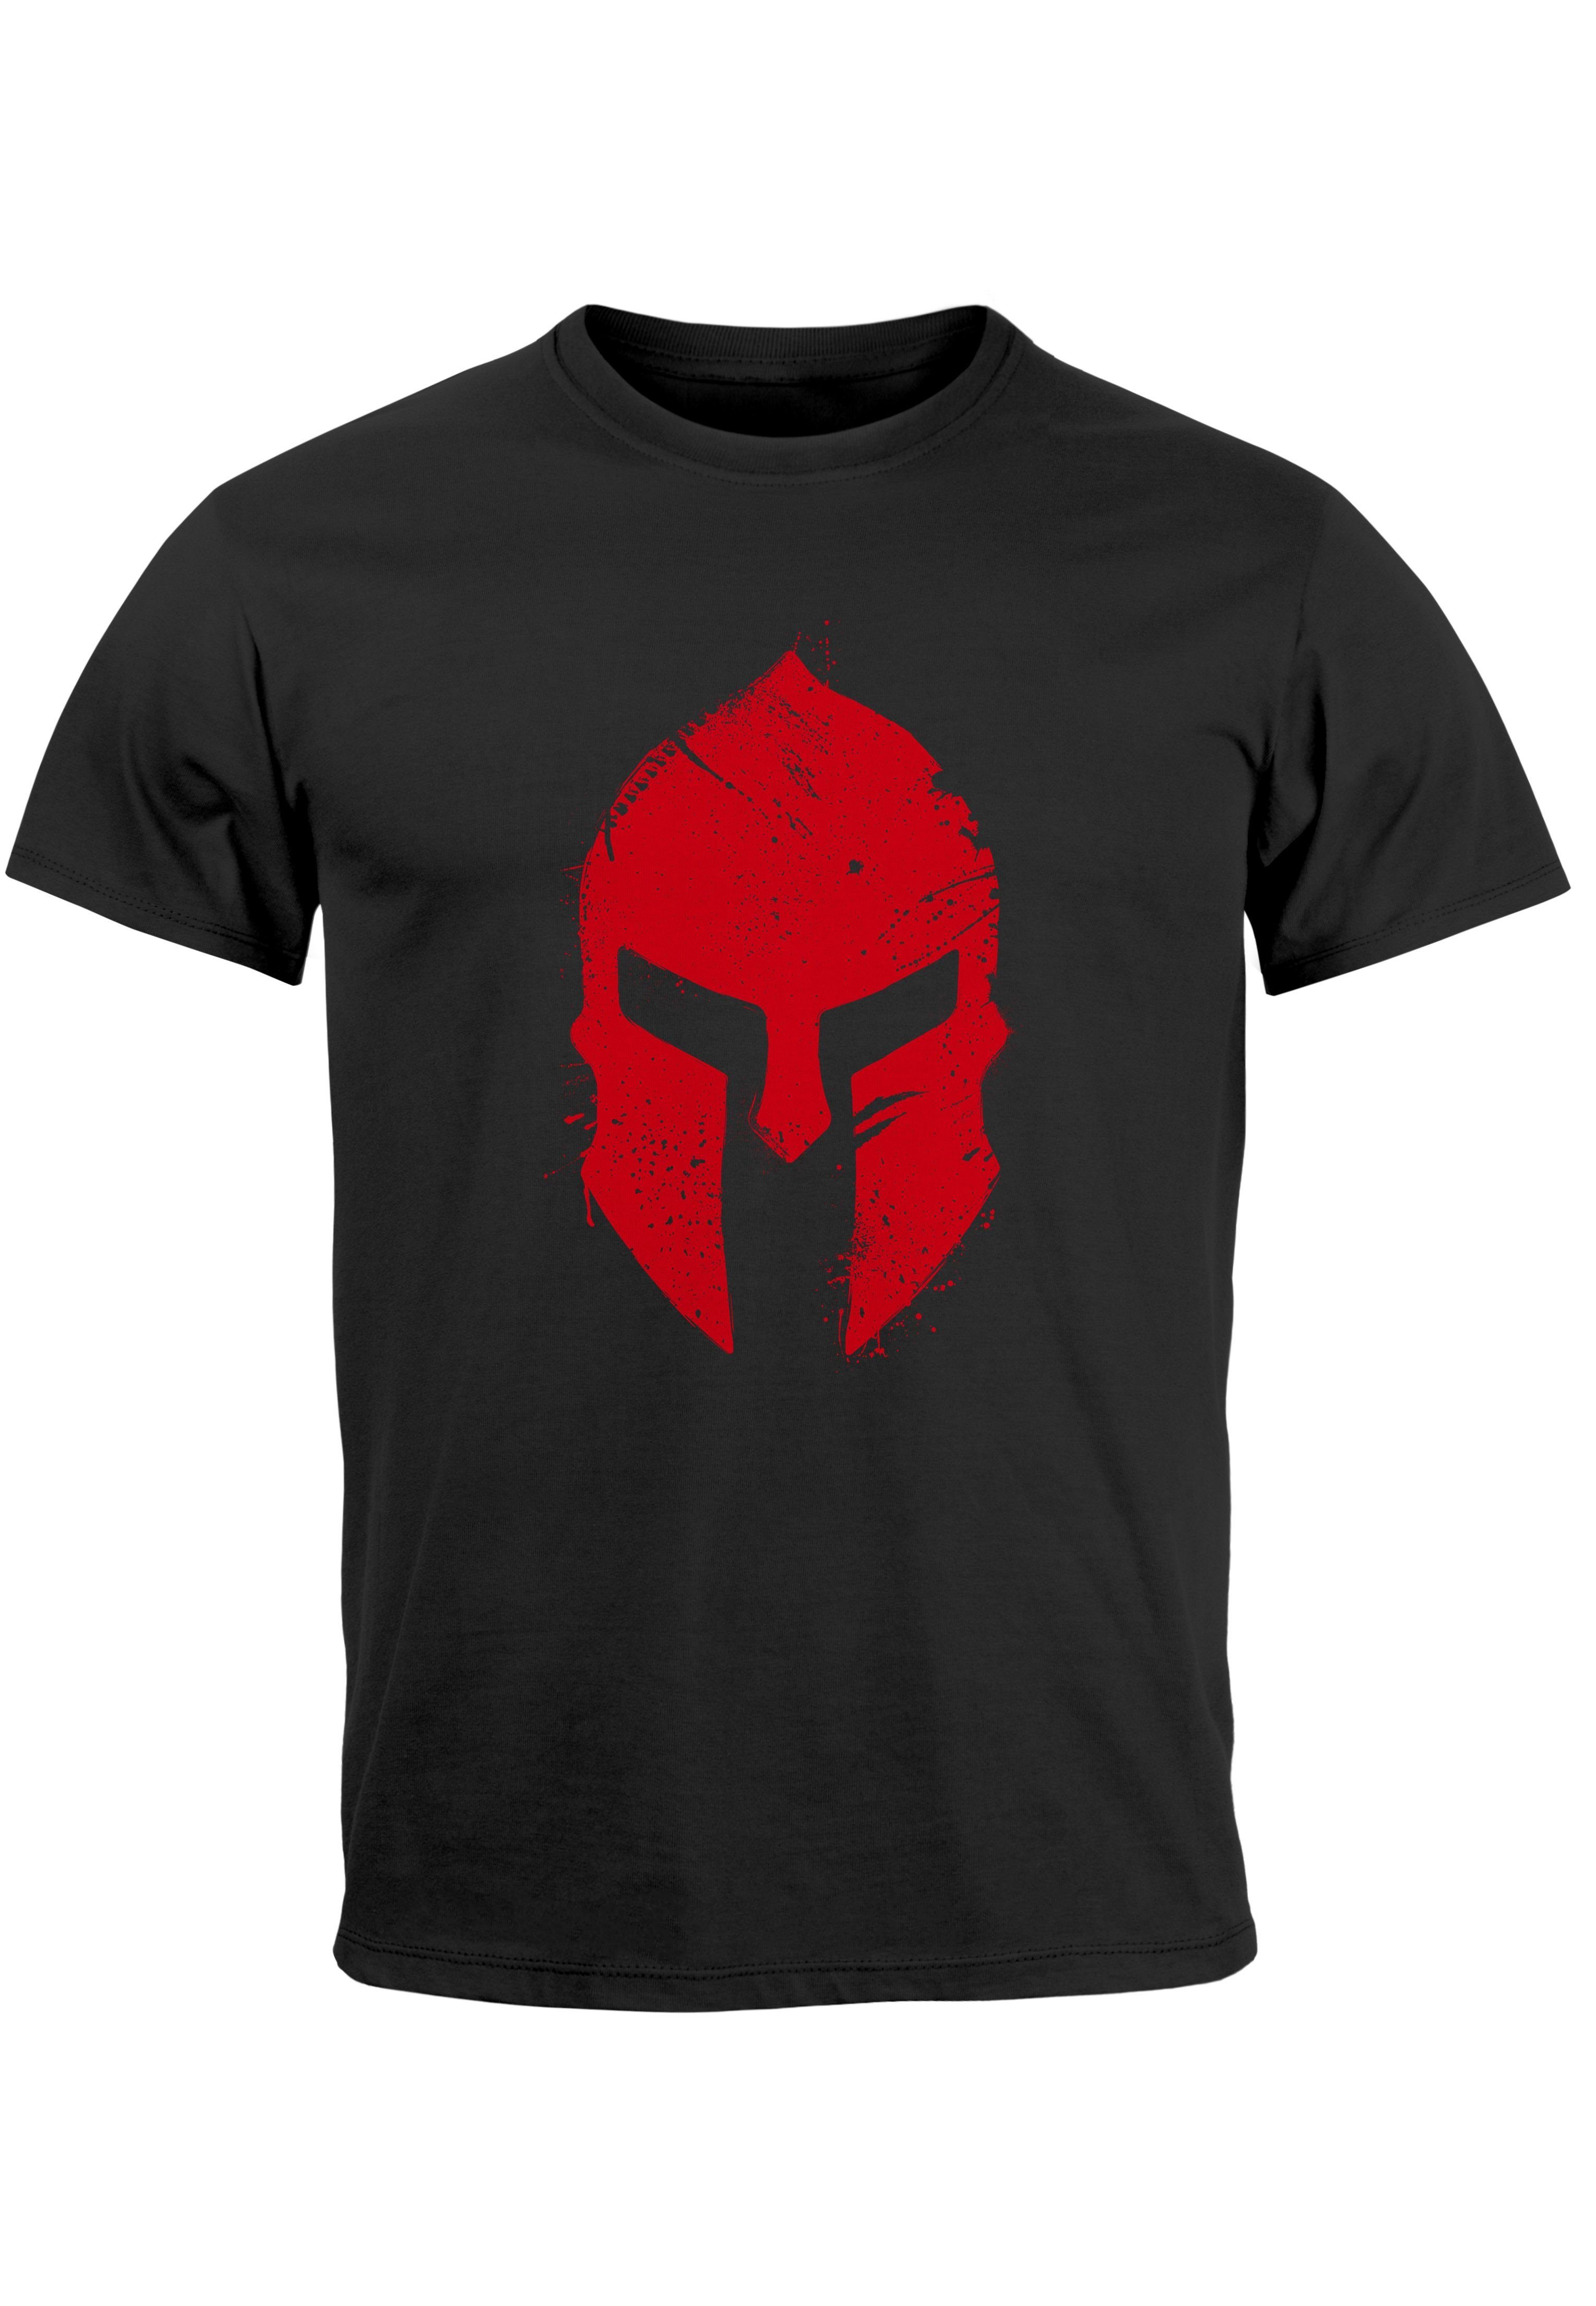 schwarz Gladiator Print Neverless Sparta-Helm Sp Herren T-Shirt mit Print-Shirt Aufdruck Krieger Print Warrior